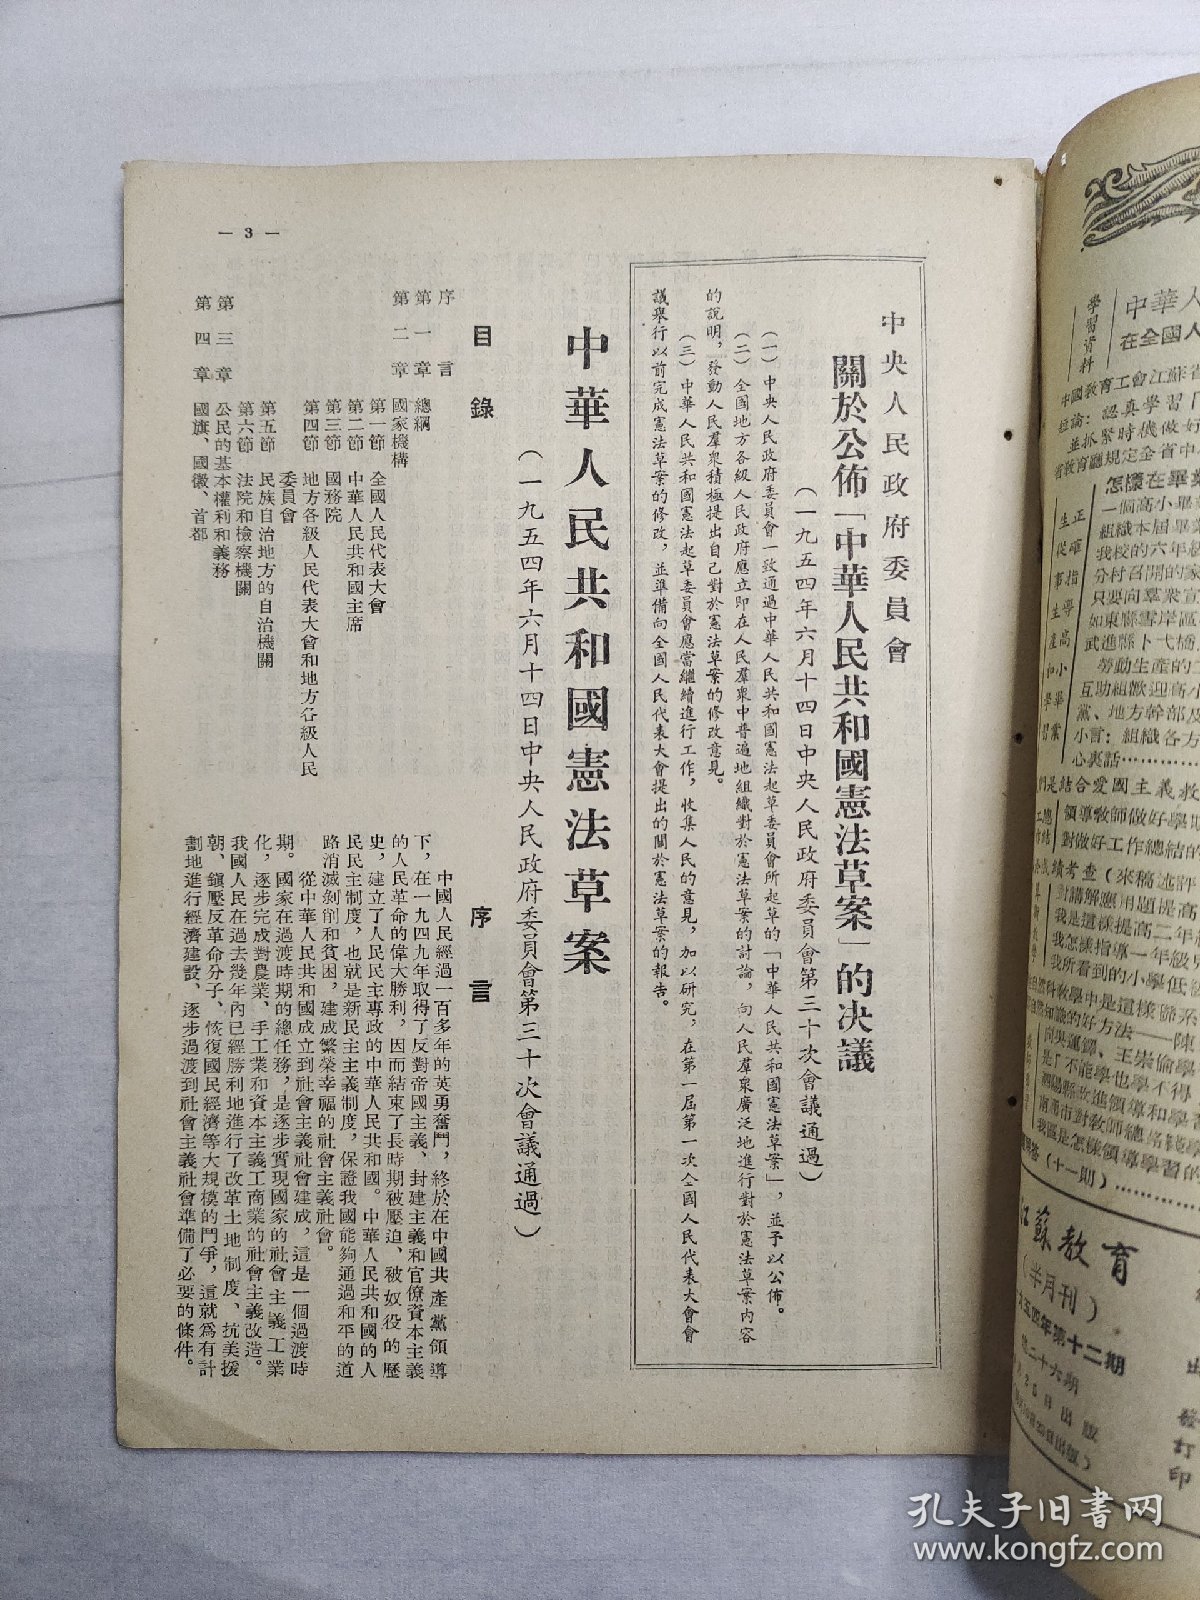 【期刊】江苏教育（半月刊） ，1954年第十二期，1954年6月25日出版，江苏人民出版社出版。